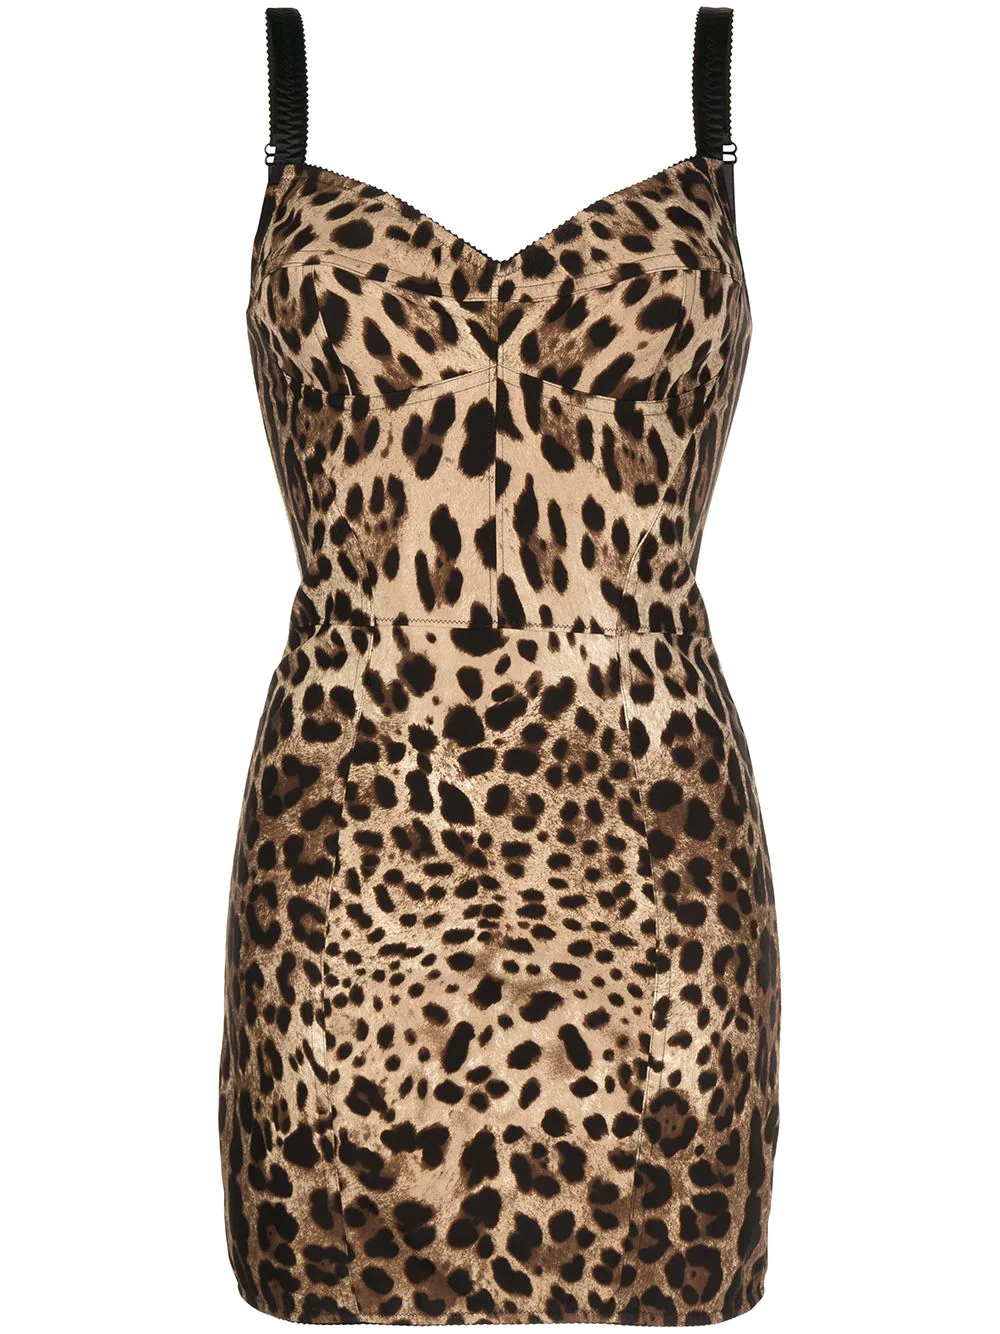 Где купить леопардовое платье, как у Дуа Липы?